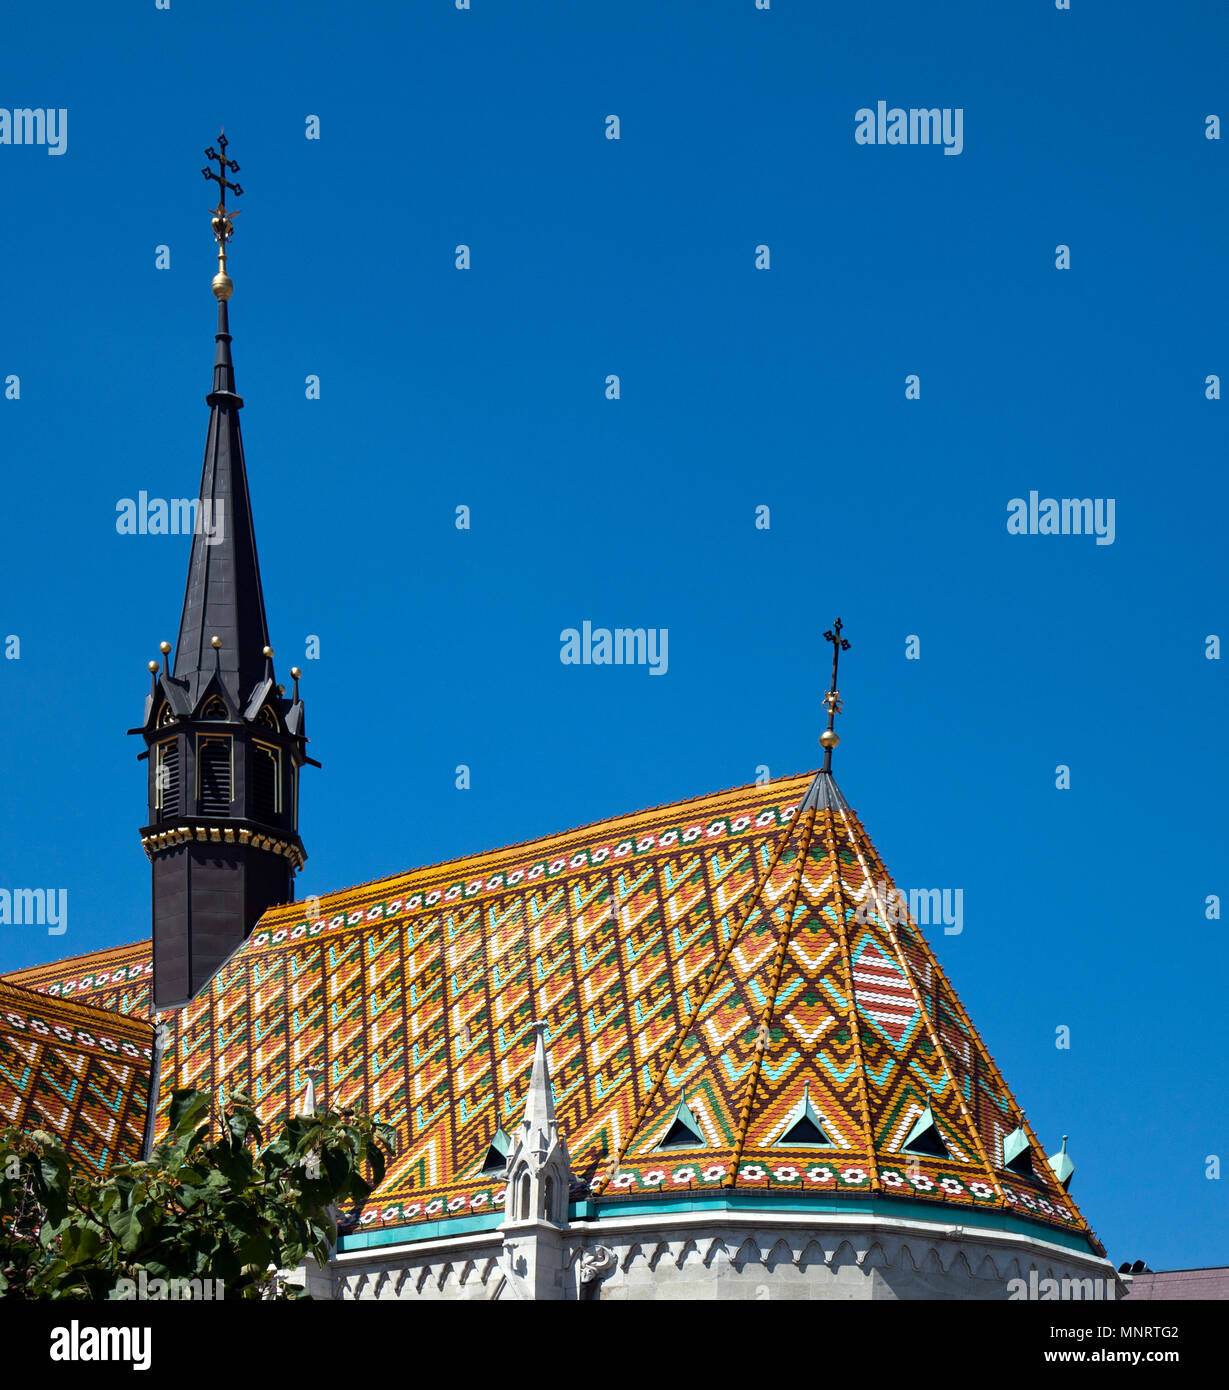 Les carreaux de céramique toit de l'église Matthias, le Bastion des Pêcheurs de couronnes sur la colline de Buda, à Budapest, Hongrie. Banque D'Images